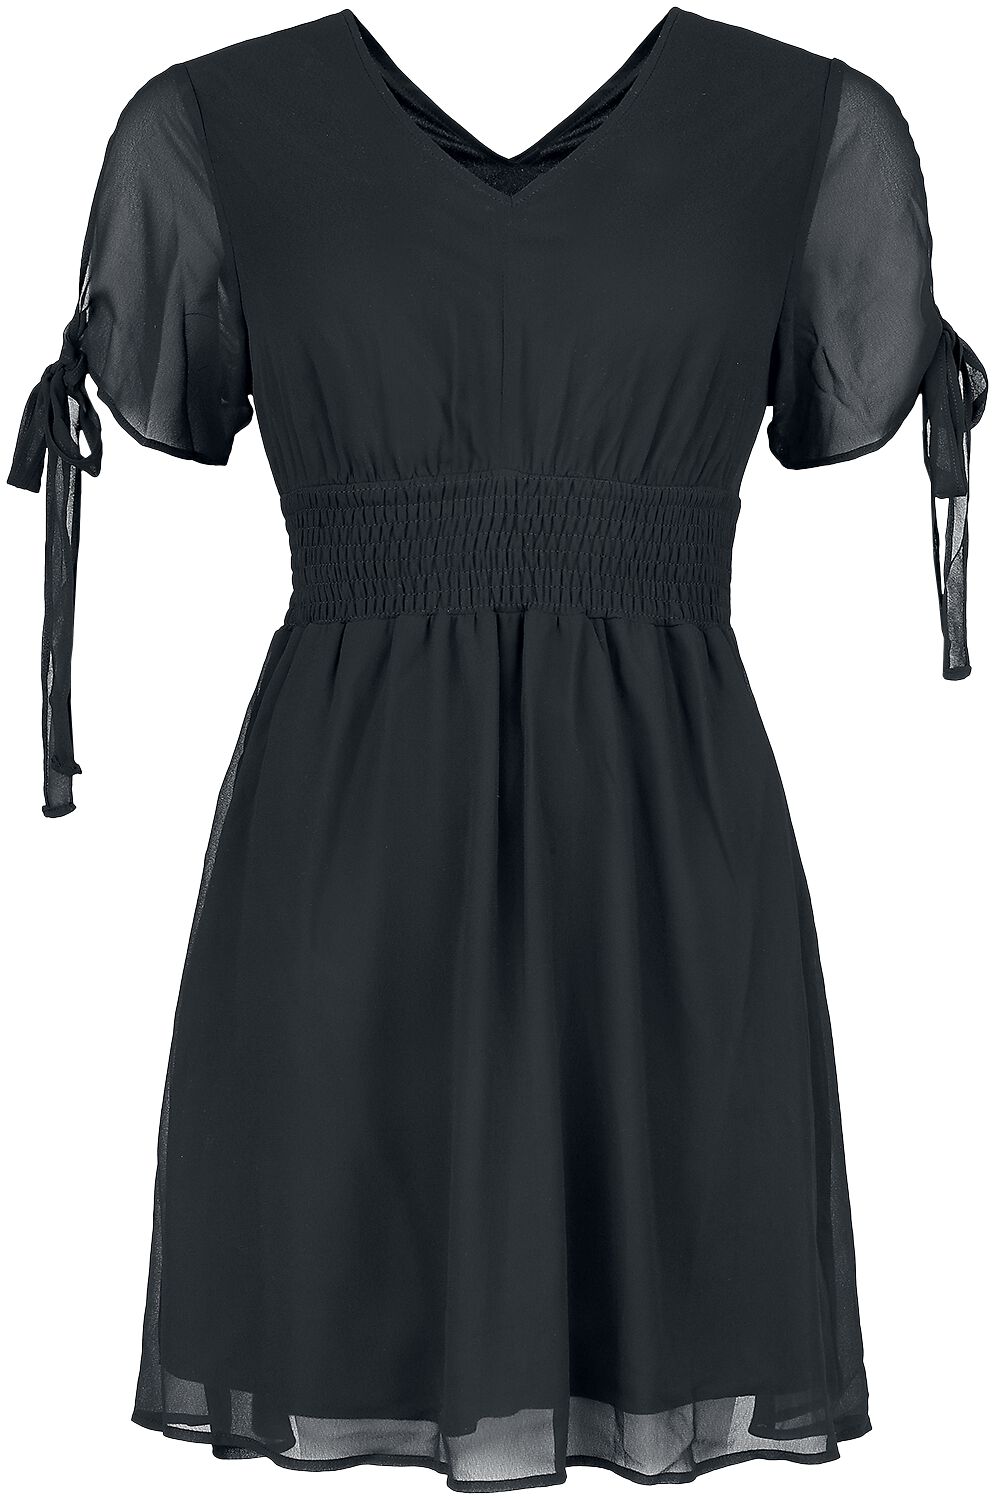 Innocent - Gothic Kurzes Kleid - Carme Dress - S bis 4XL - für Damen - Größe XXL - schwarz